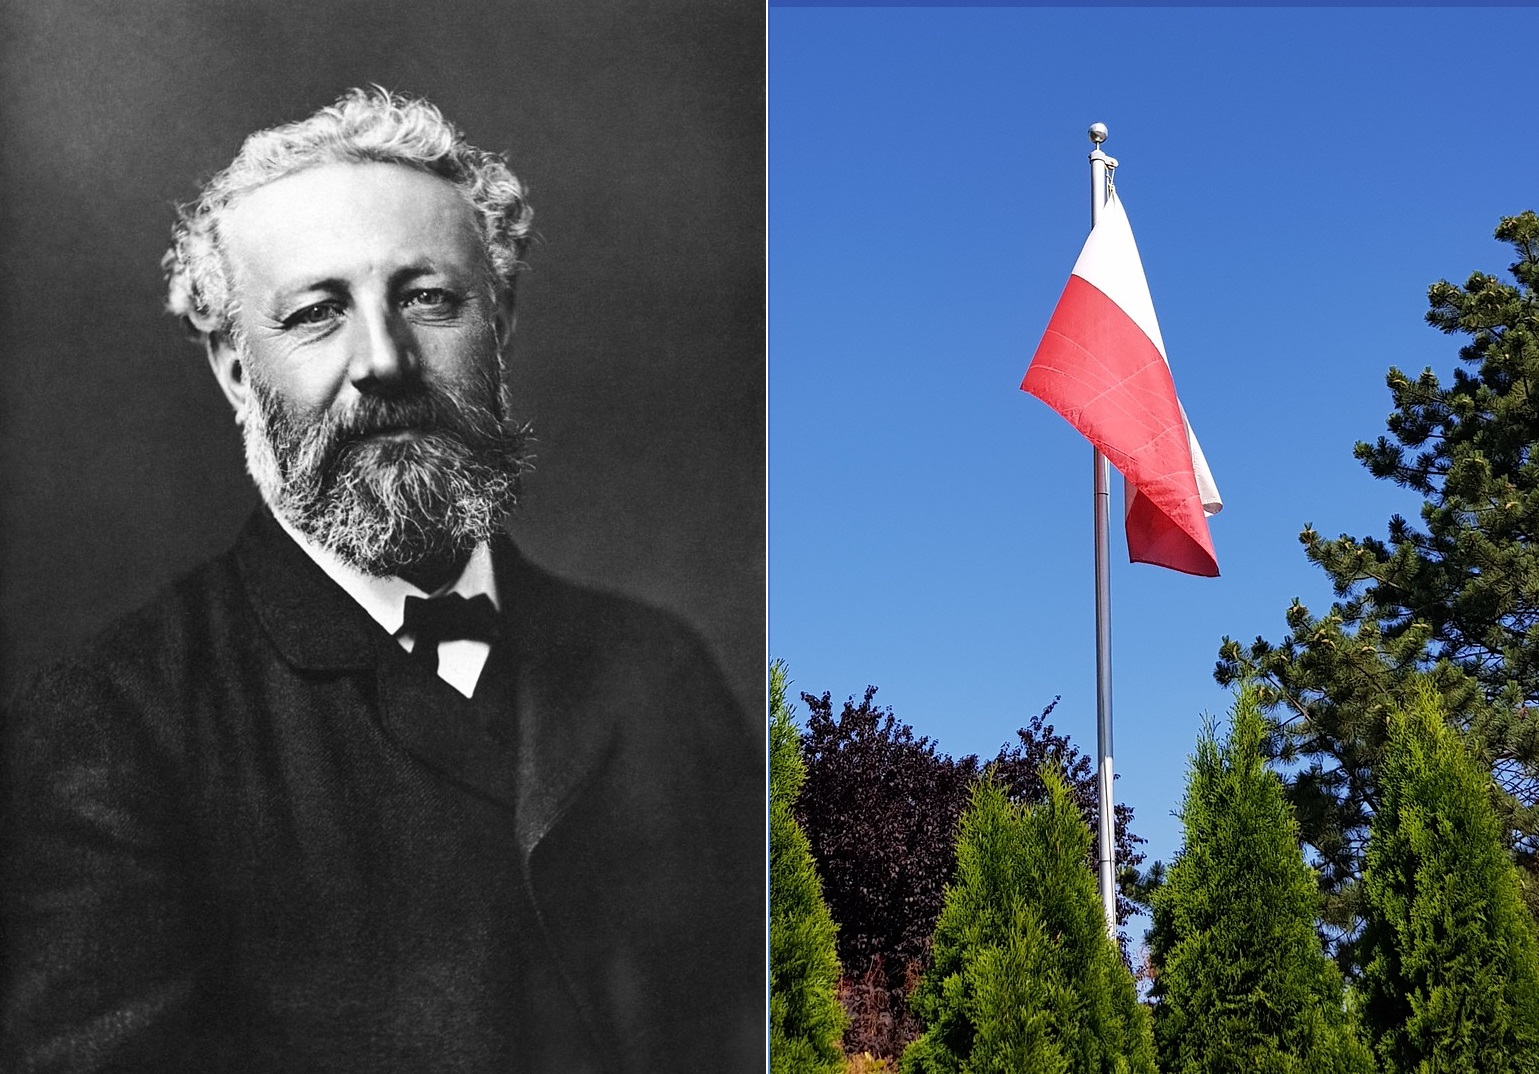 Zdjęcie Julesa Verne’a wykonane przez Féliksa Nadara i flaga Polski, fot. wikimedia (domena publiczna) oraz Pixabay.com